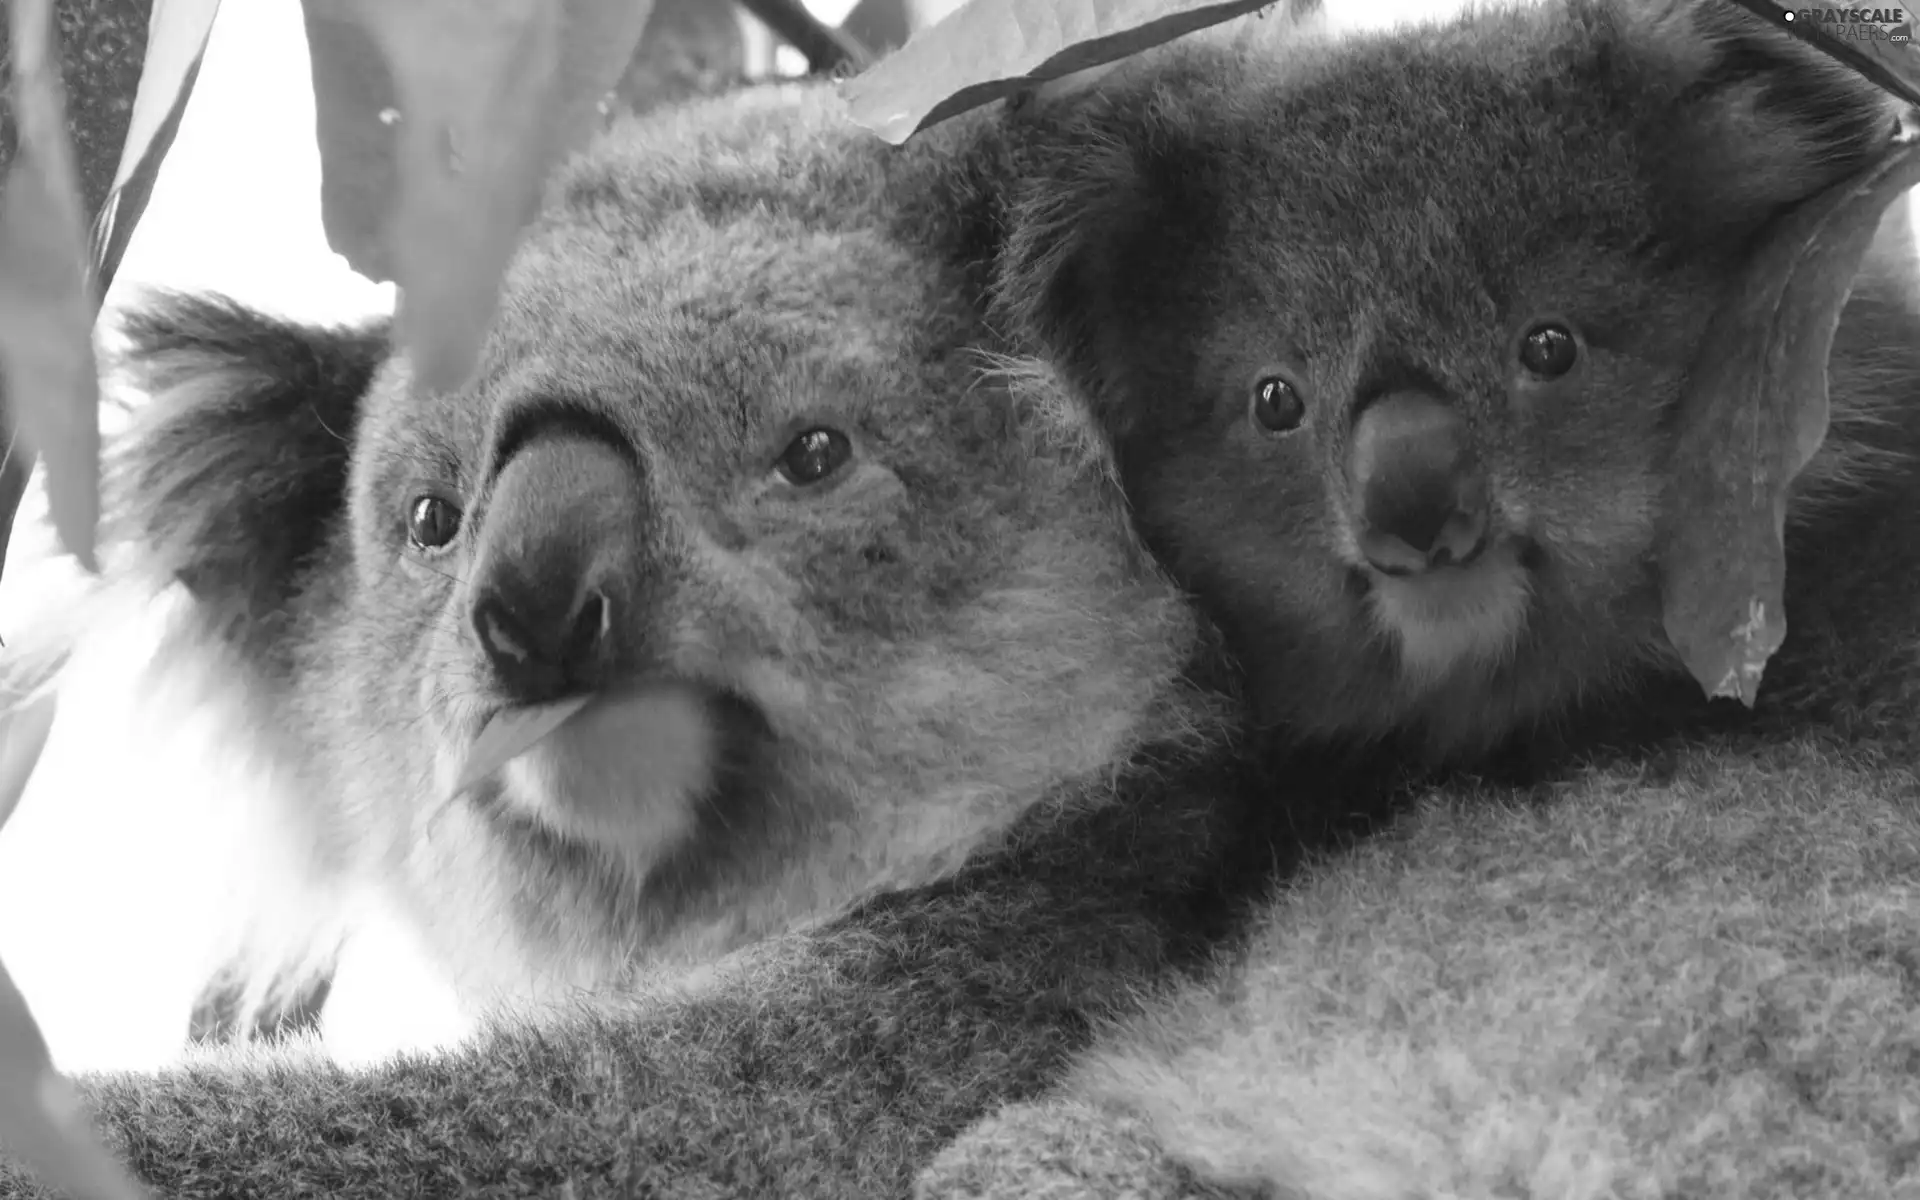 Koala, Two cars, bear